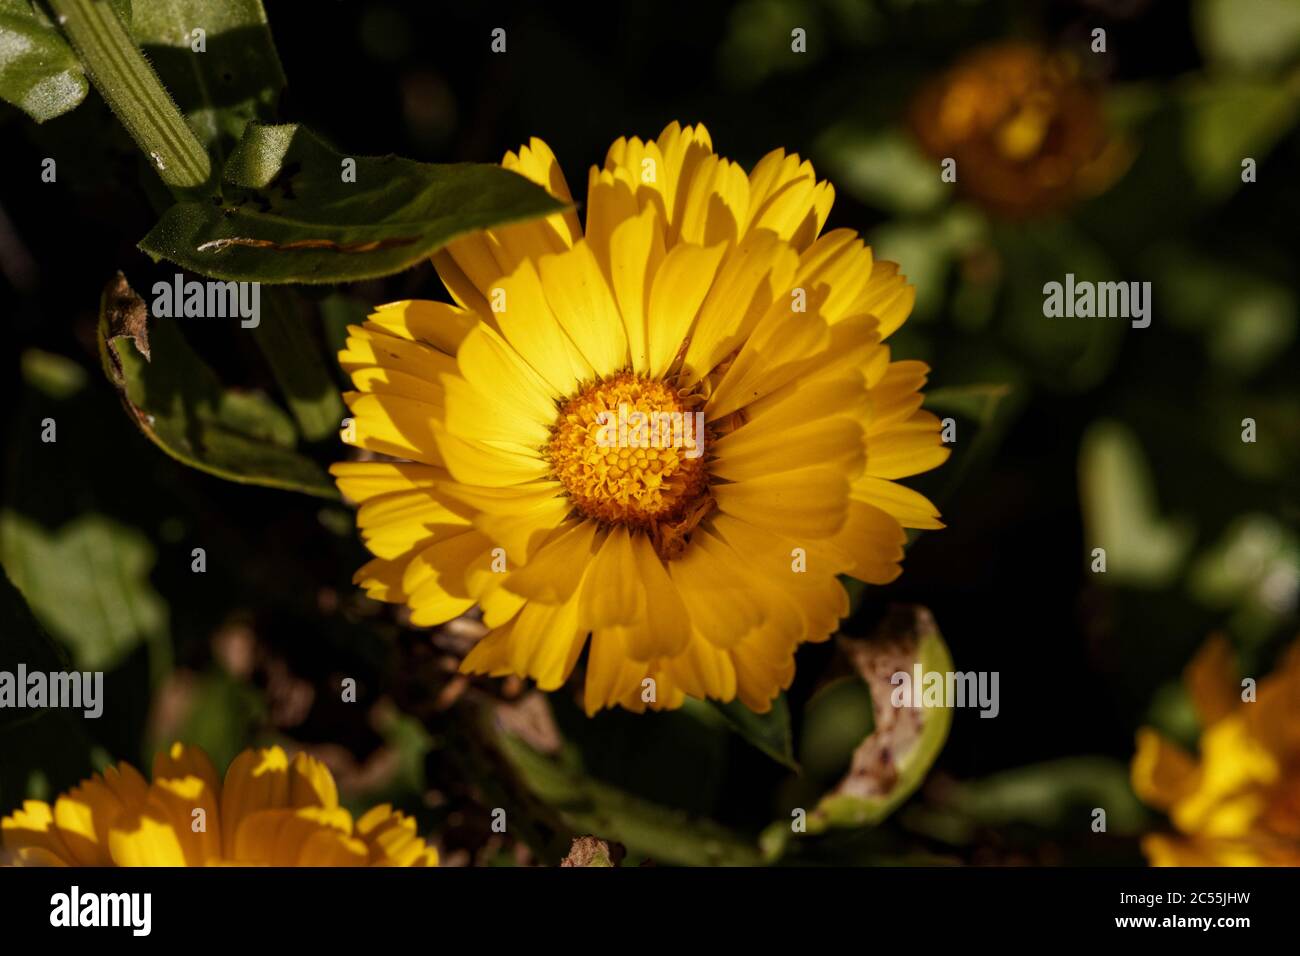 Calendula officinalis, der Topf Ringelblume, Ruddles, gemeine Ringelblume oder Scotch Ringelblume, ist eine blühende Pflanze aus der Familie der Gänseblümchen Asteraceae. Stockfoto